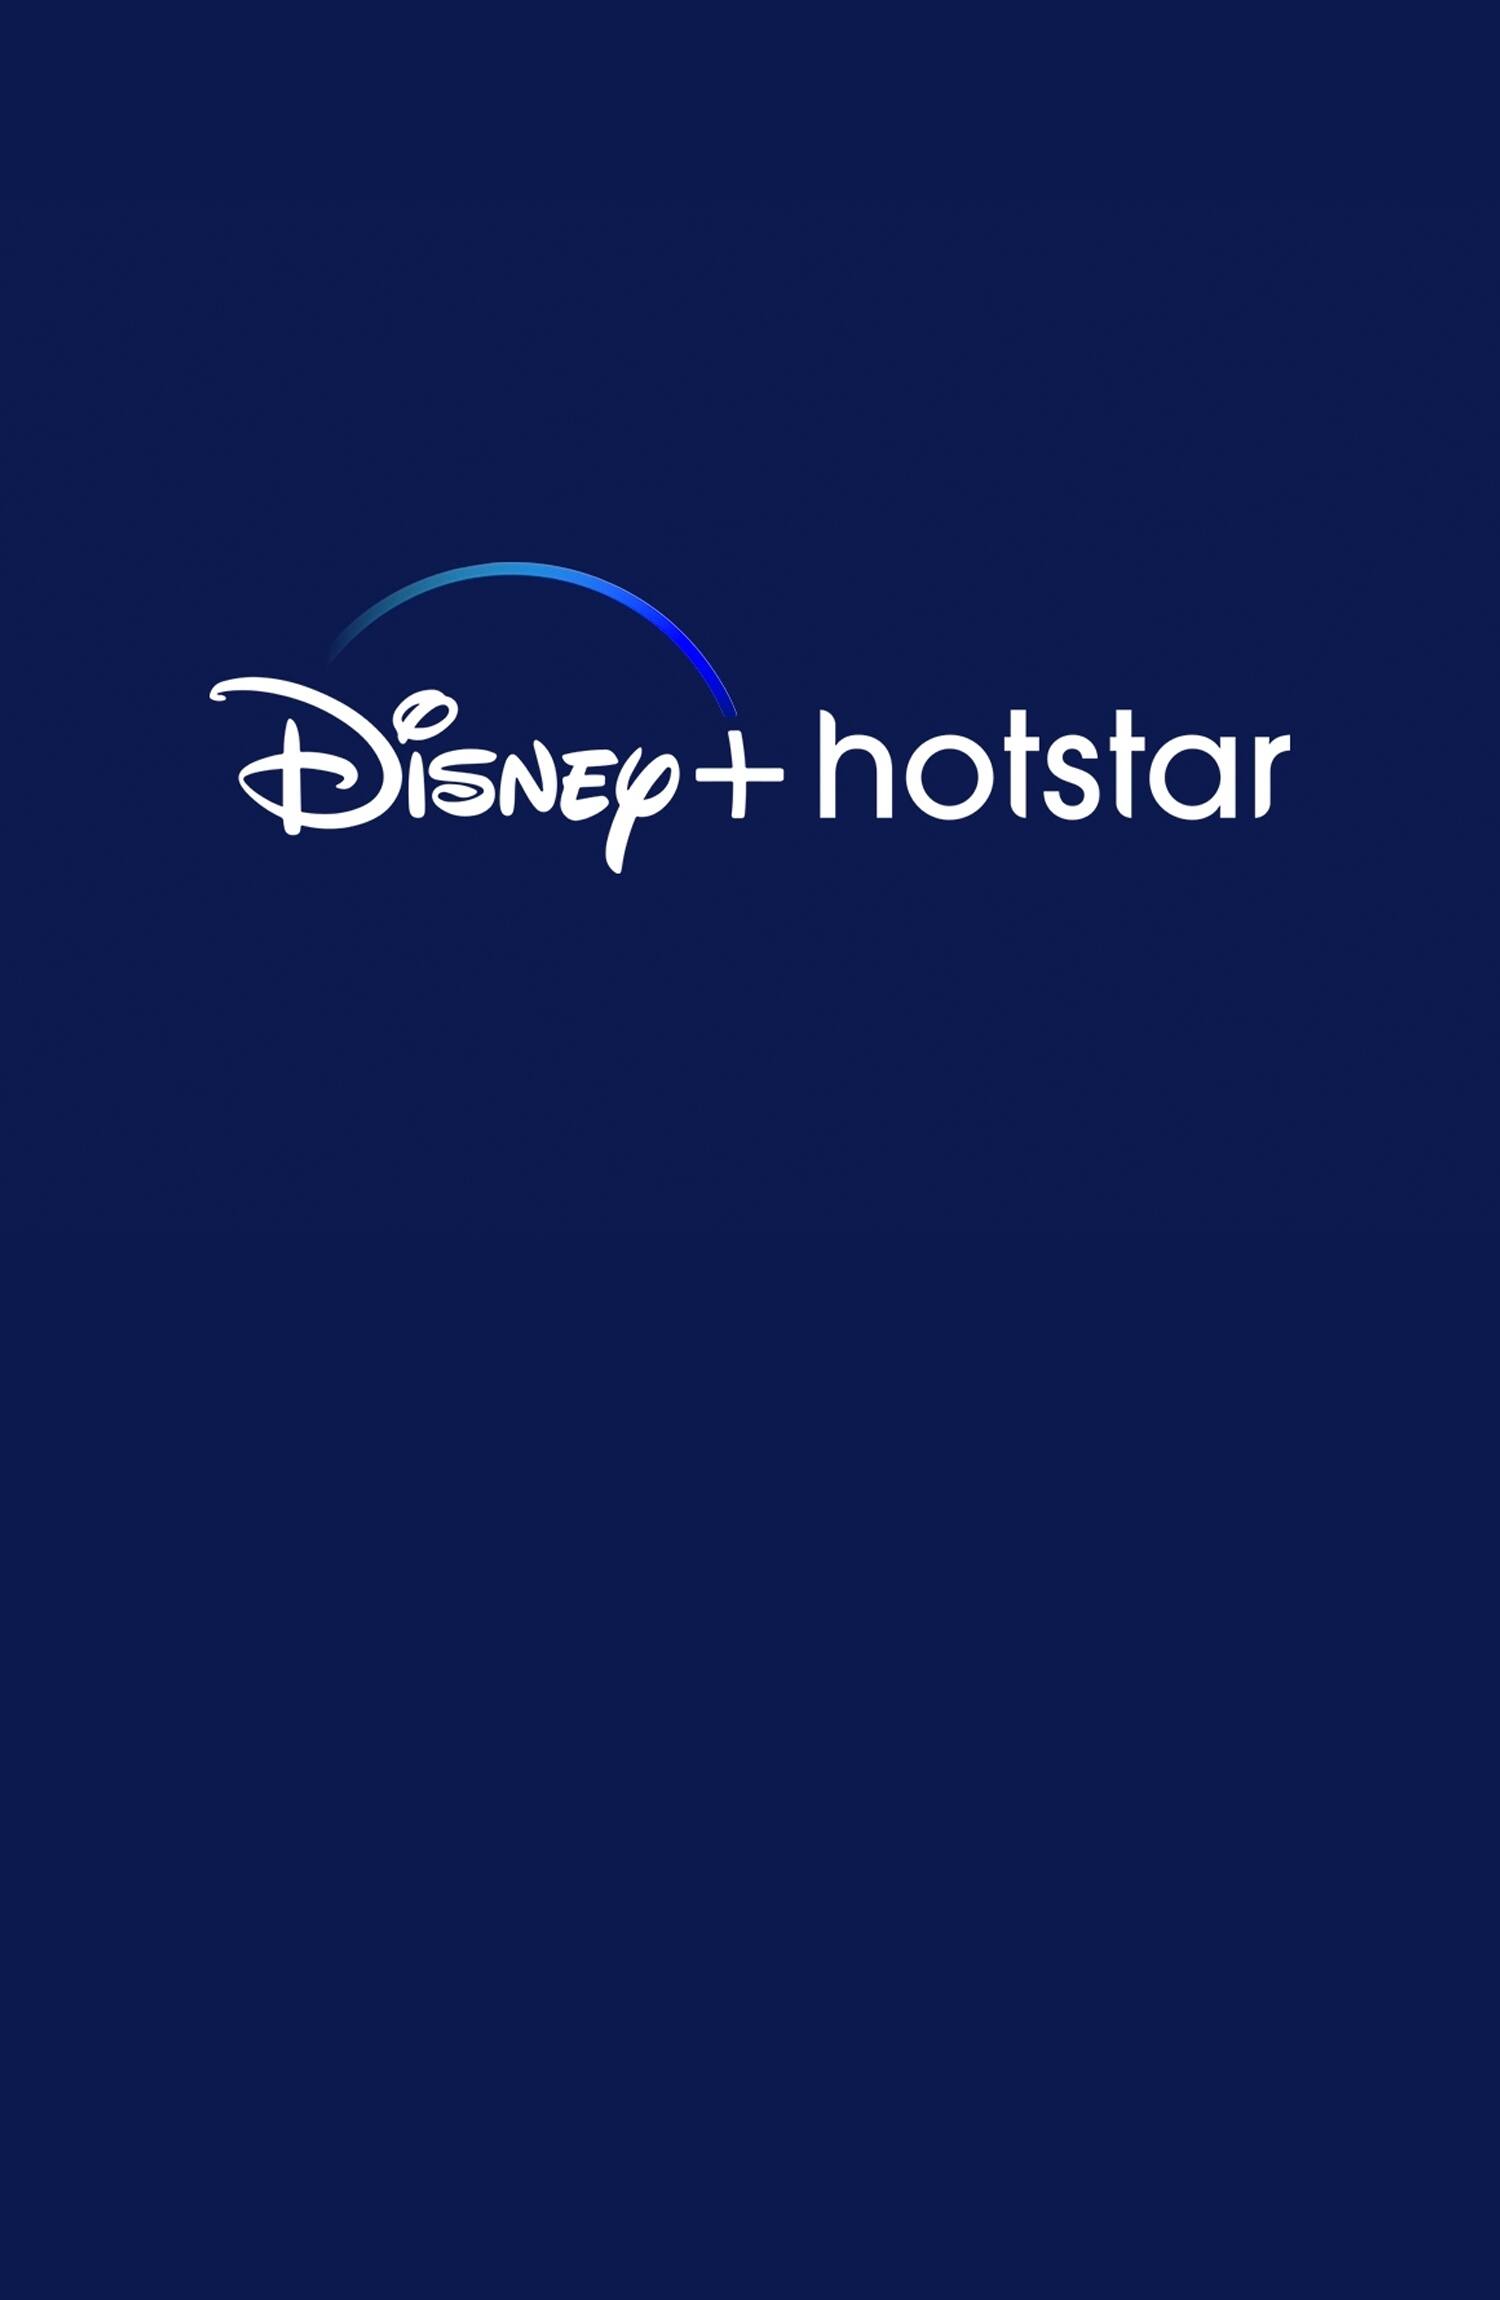 Hotstar Mobile App Logo Video Streaming Stock Photo 1711238332 |  Shutterstock